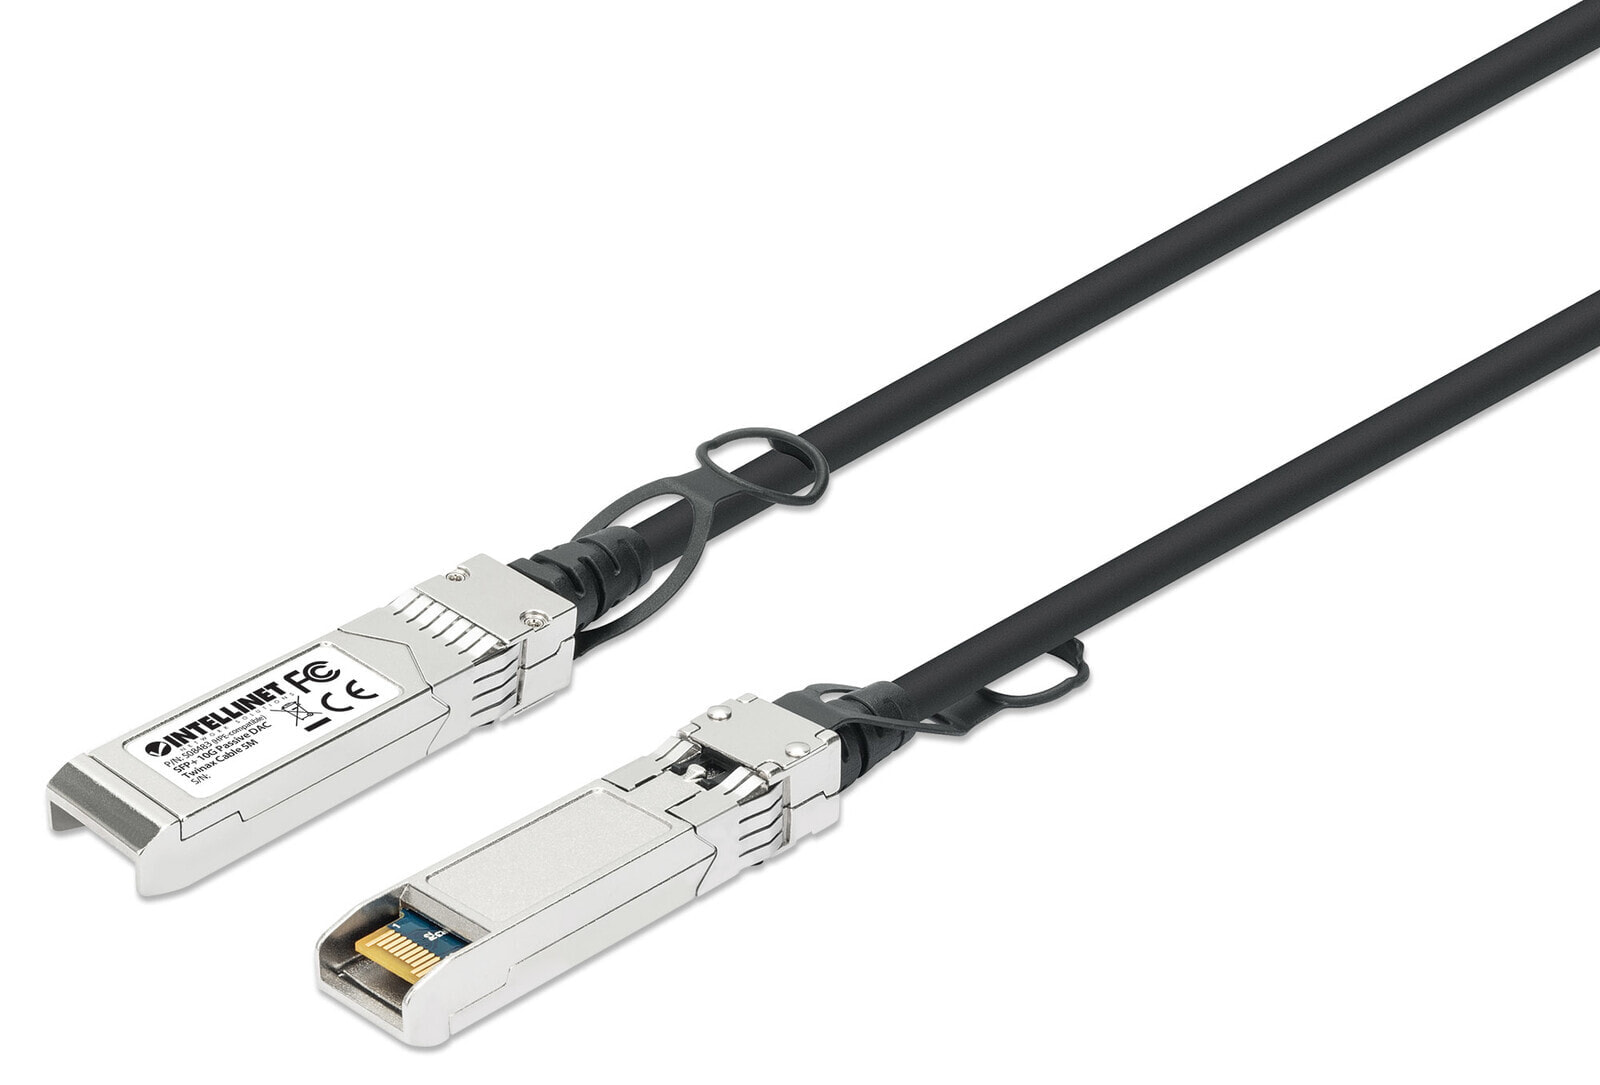 Intellinet 508483 волоконно-оптический кабель 5 m SFP+ Черный, Серебристый